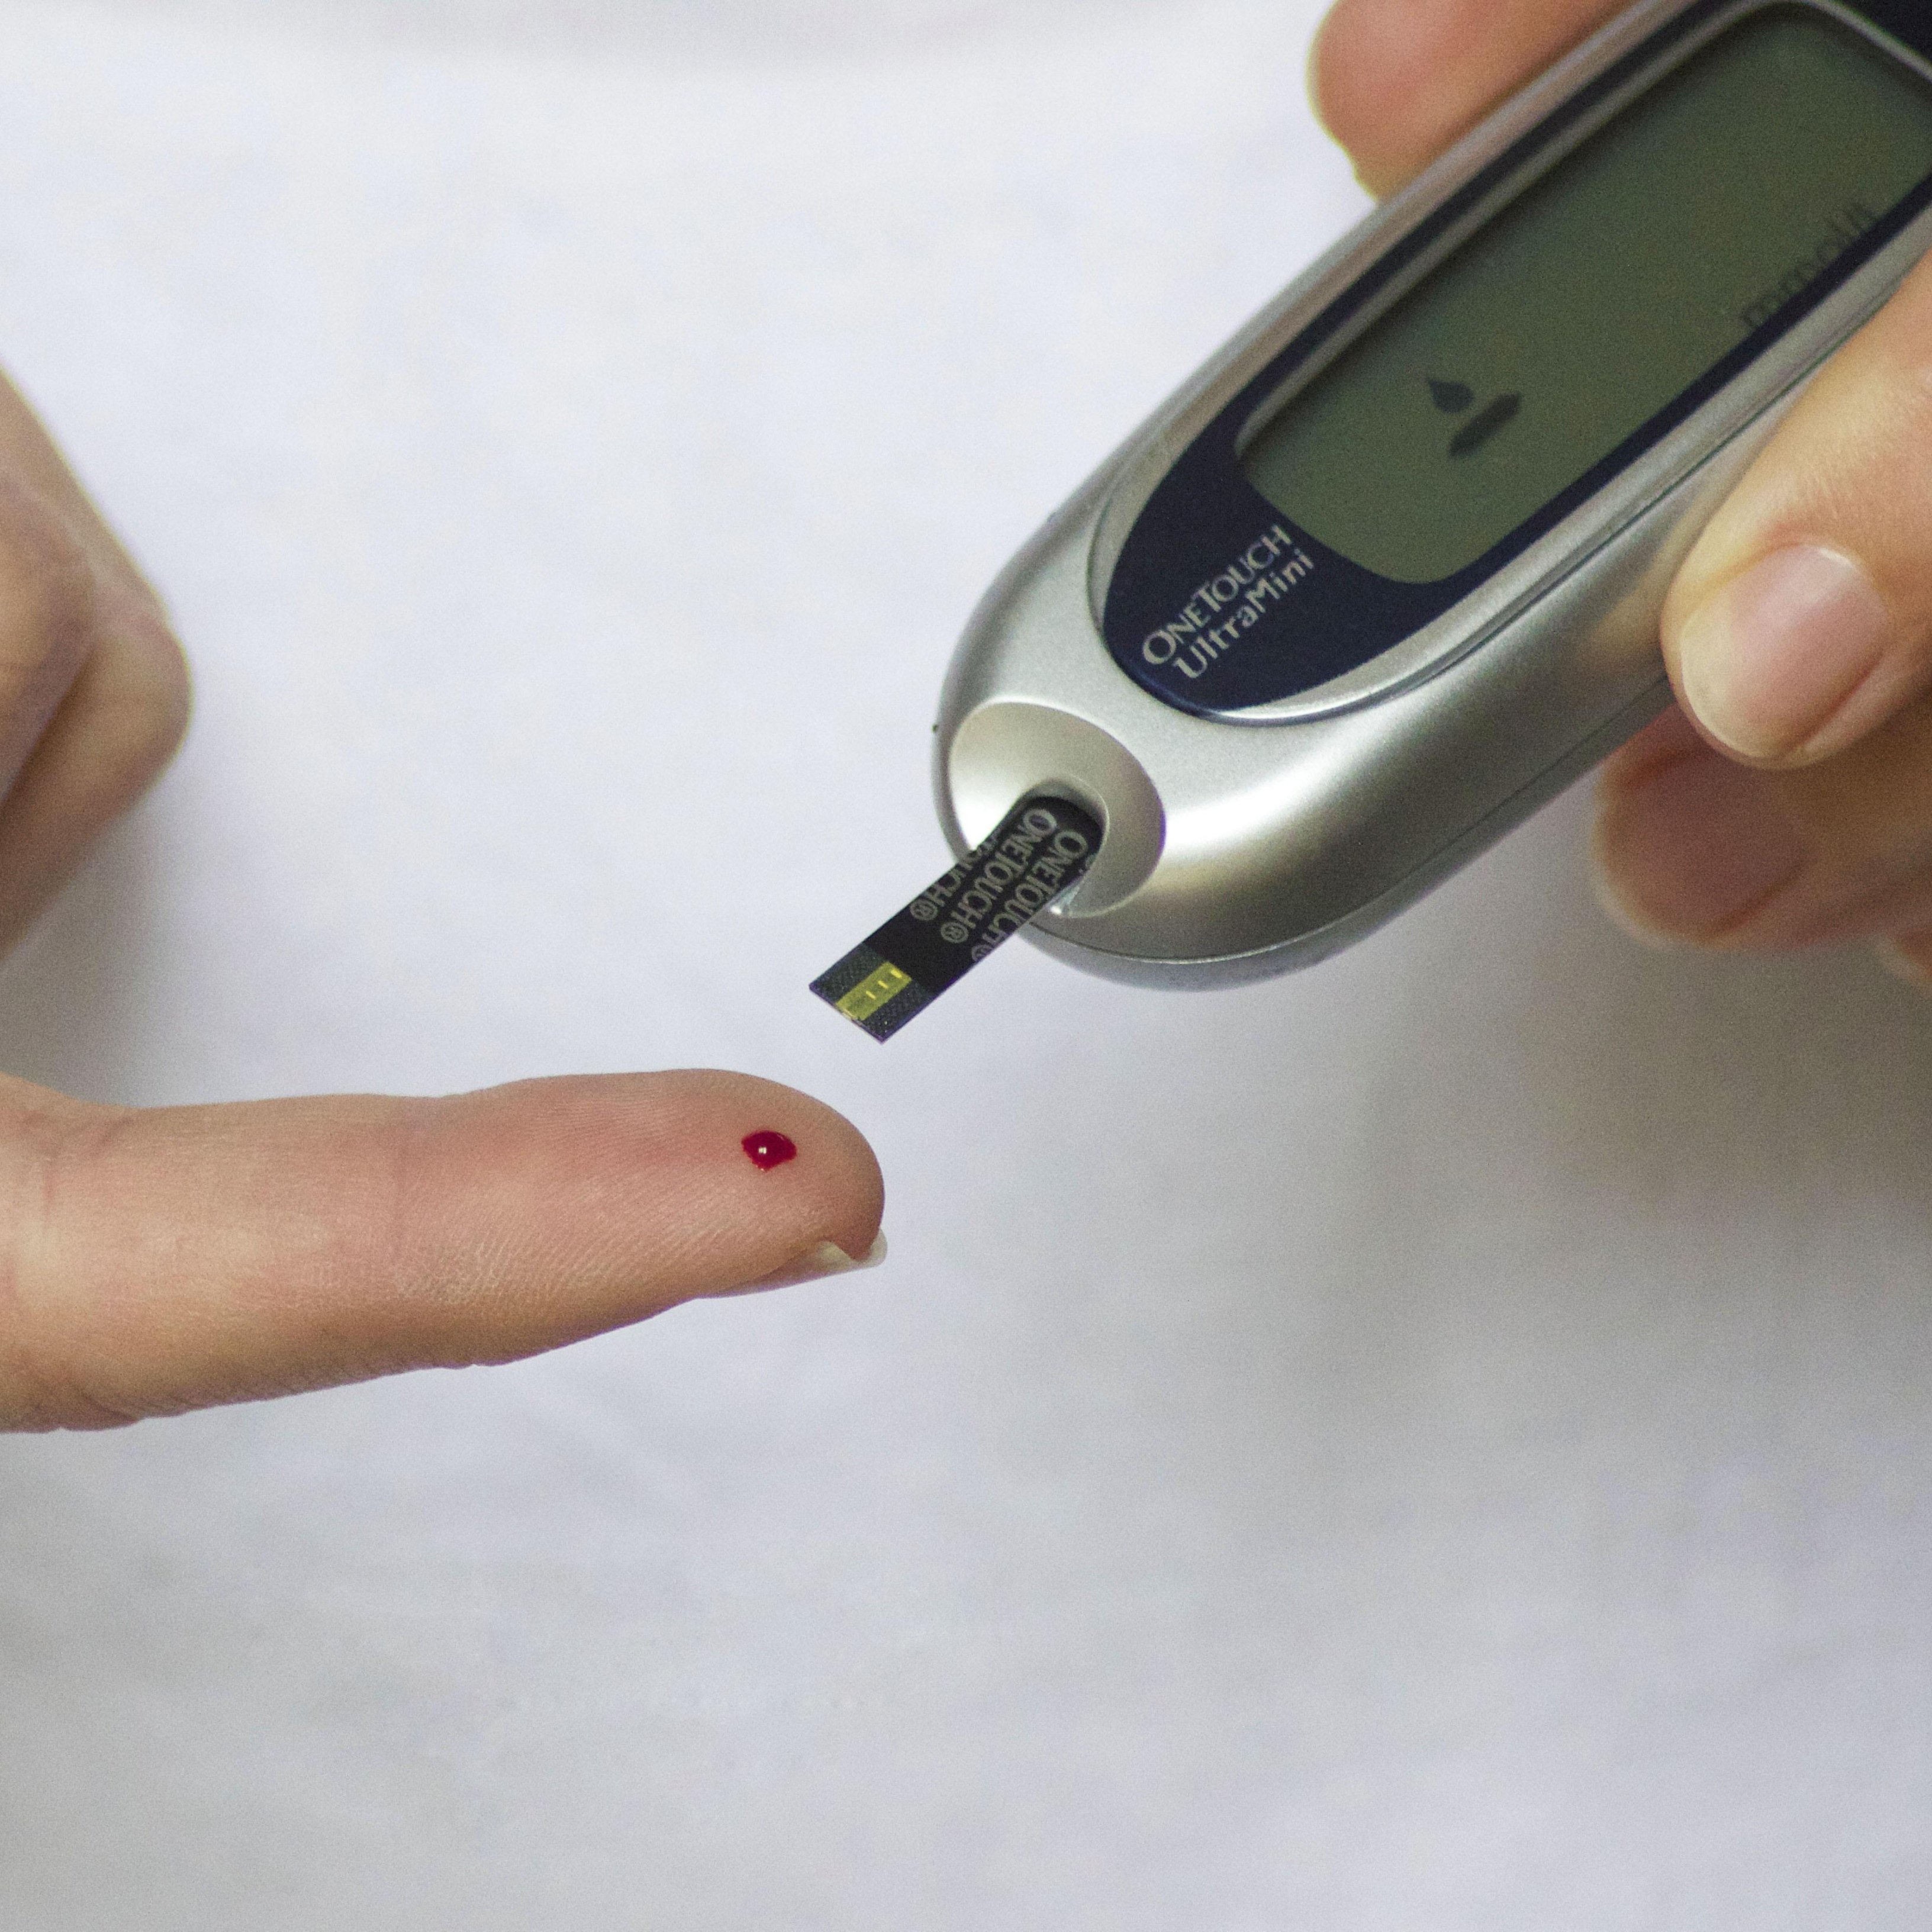 És genètica la diabetis tipus 1?